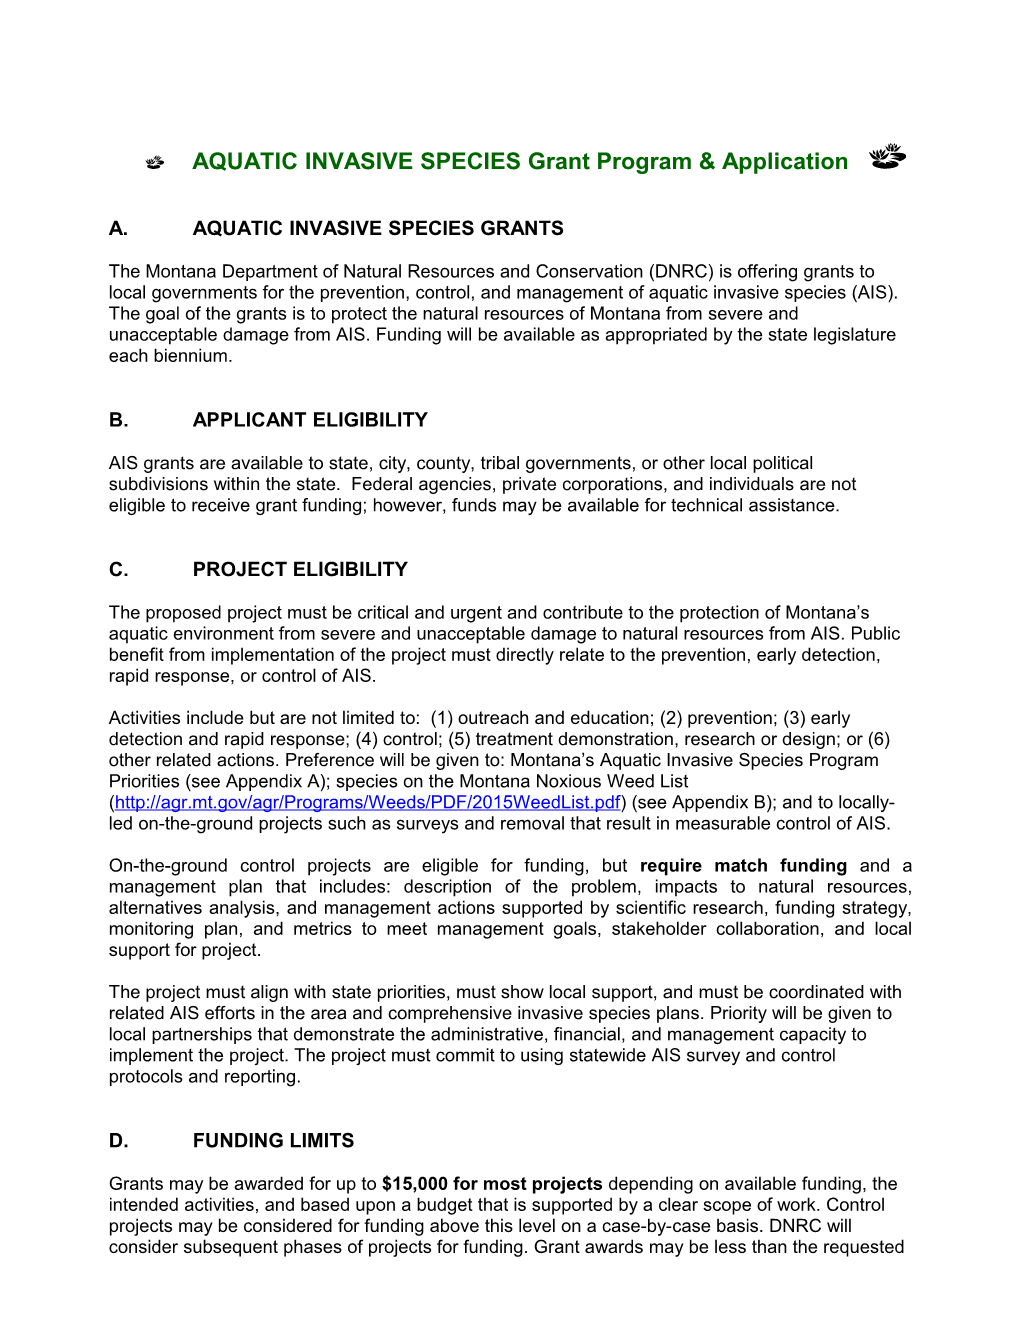 AQUATIC INVASIVE Speciesgrant Program & Application